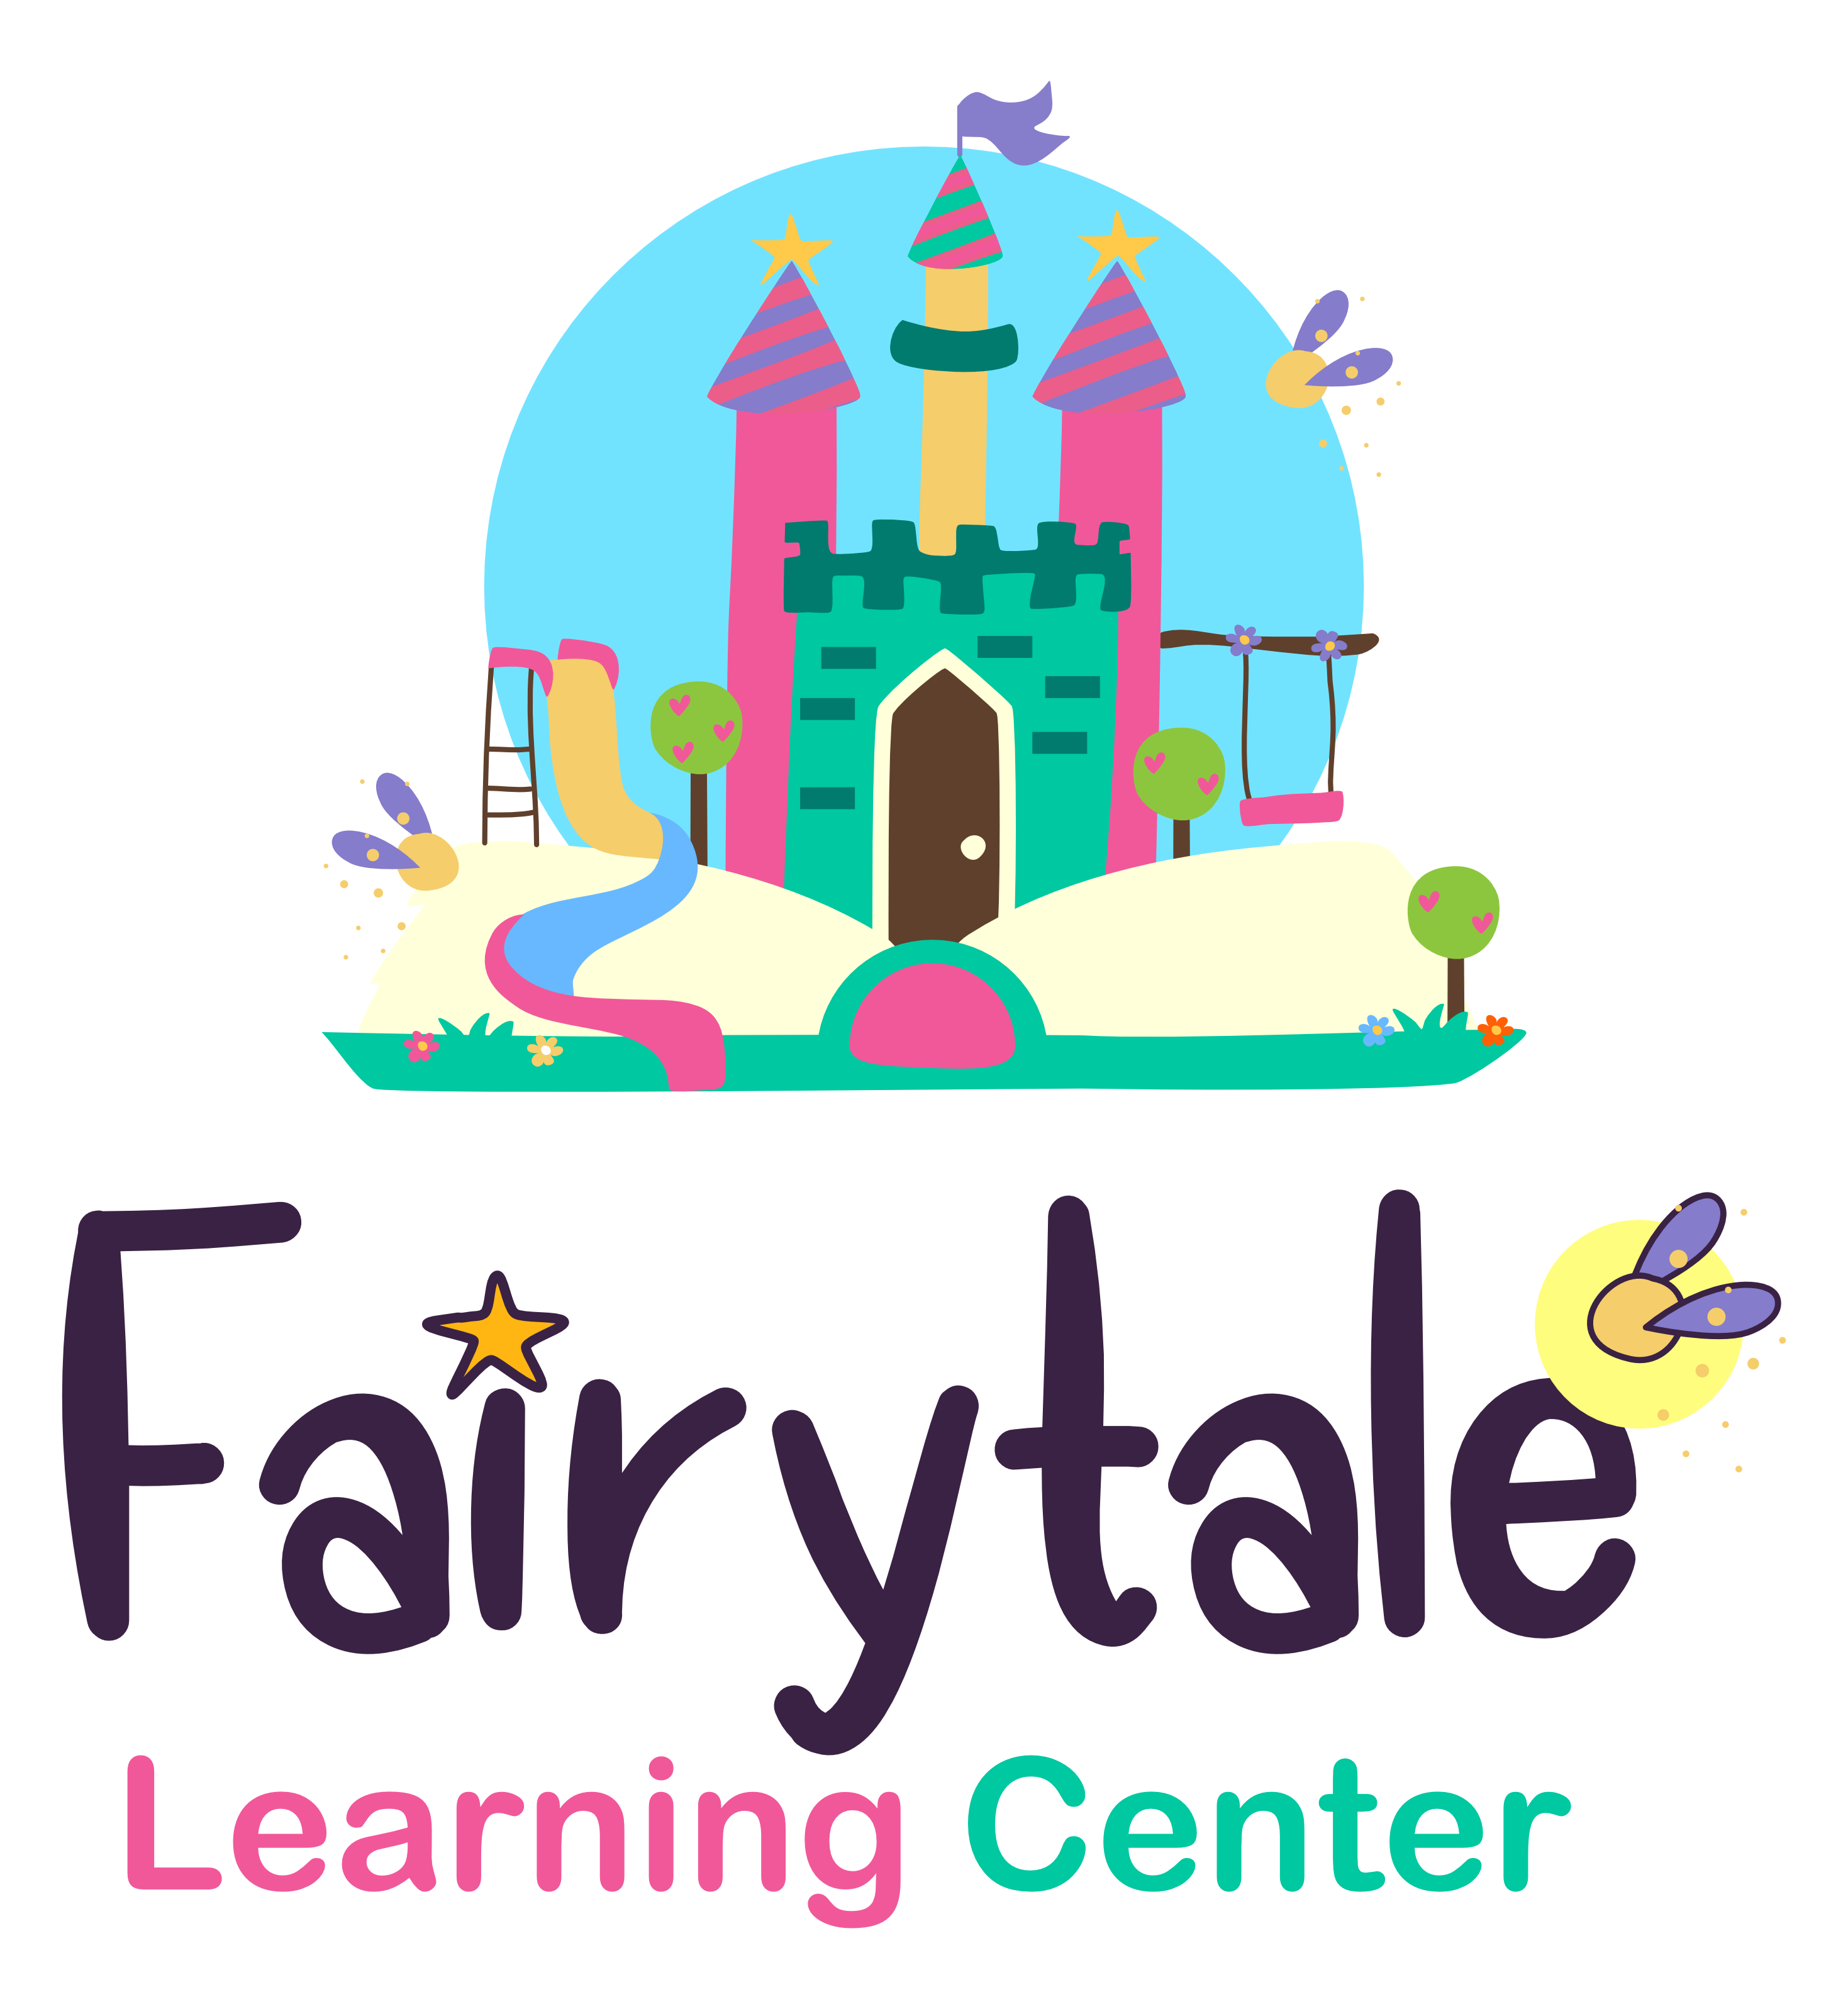 Fairytale Learning Center